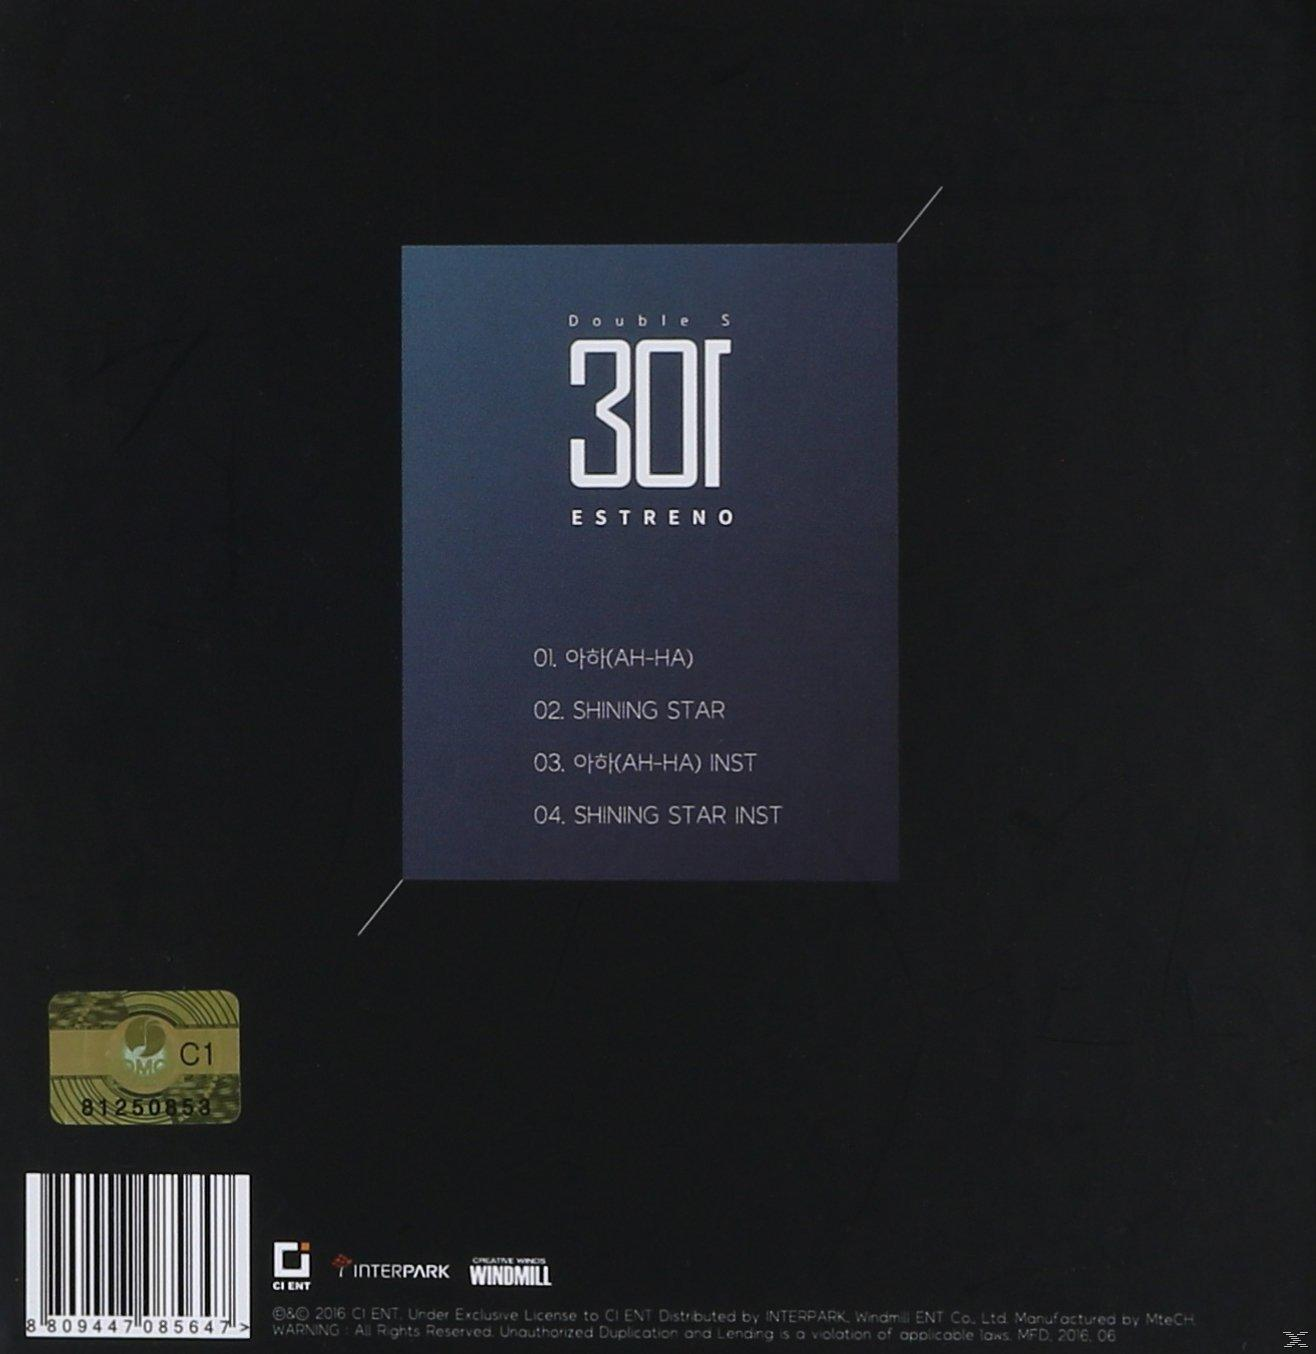 Estreno - - 301 S Double (CD)